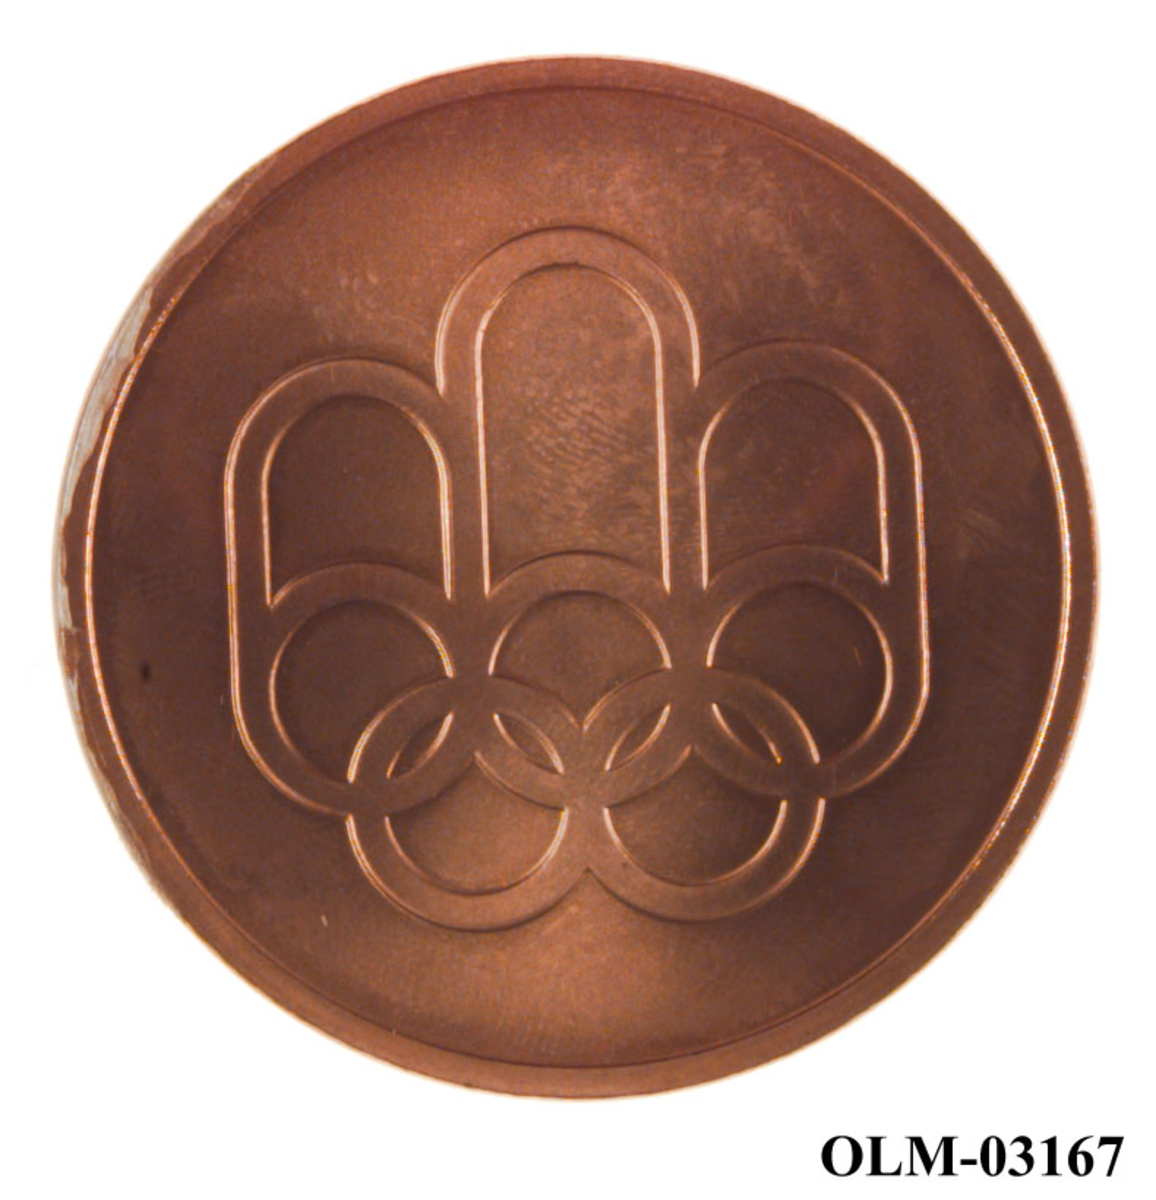 Bronsefarget minnemdalje med emblemet for de olympiske sommerleker i Montreal i 1976 og motiv av den olympiske stadion i Montreal. Med medaljen følger det et sort etui.